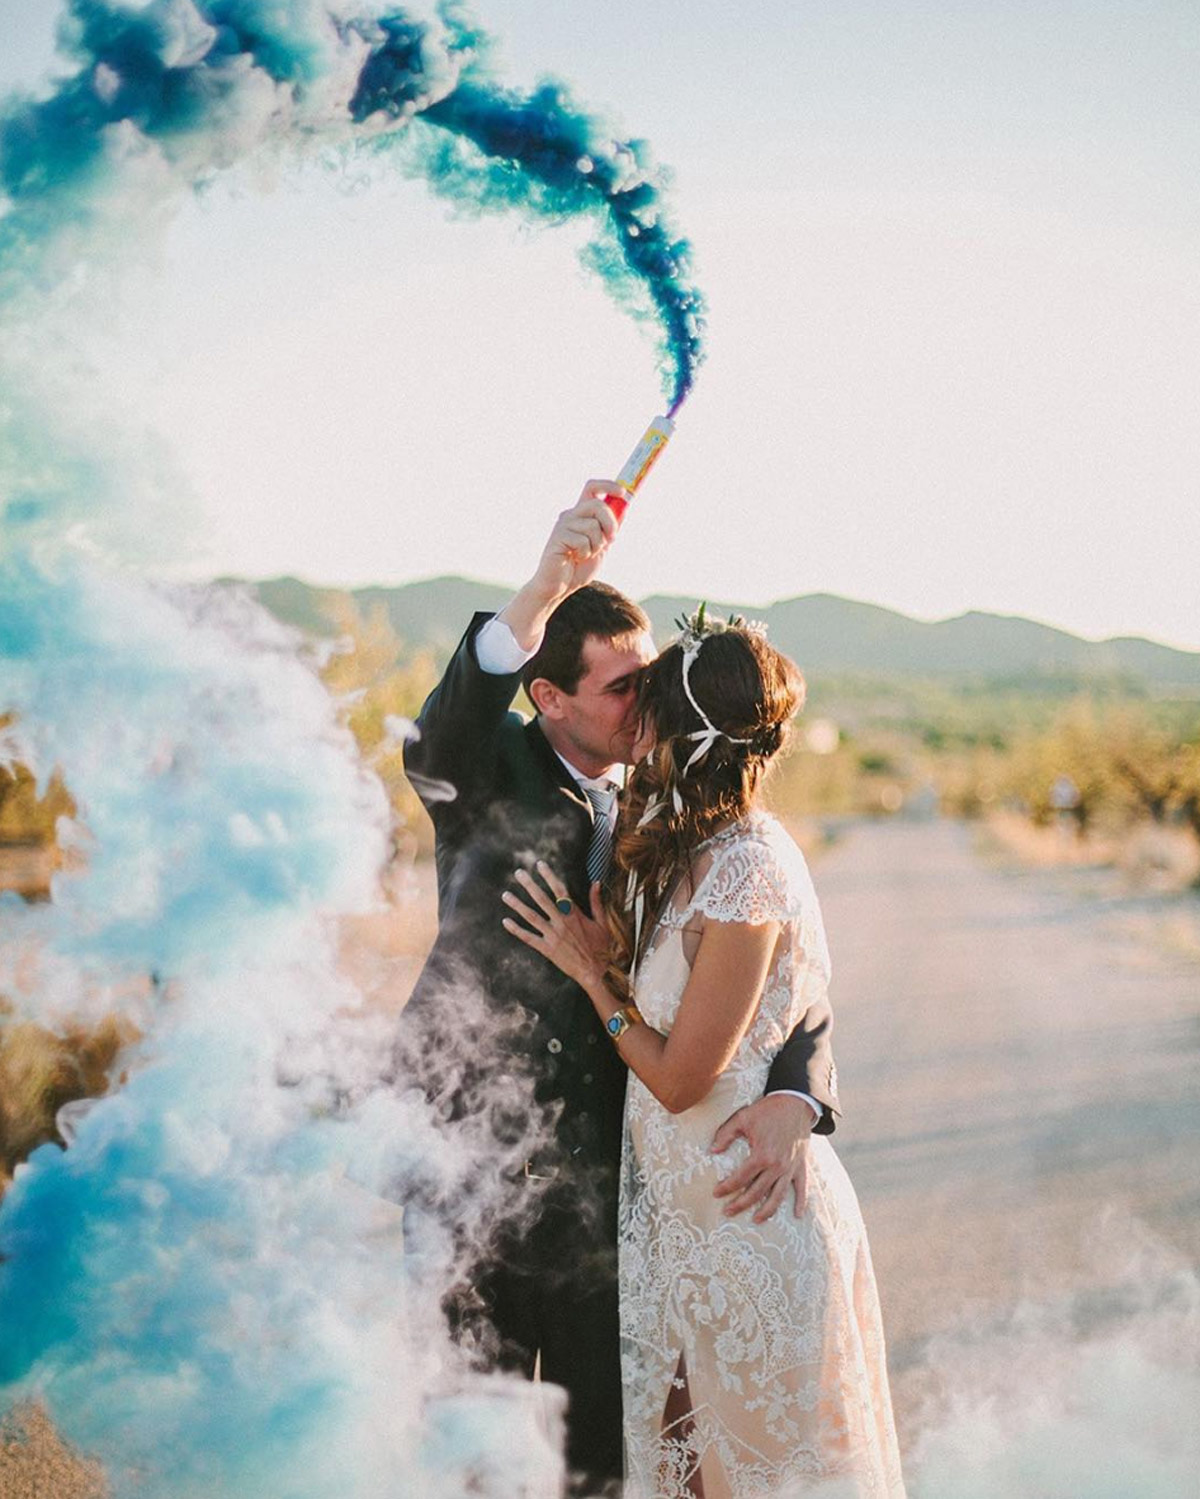 Isaac Loco Agotamiento Momentos para utilizar el humo de color en tu boda – El Blog de This Is Kool